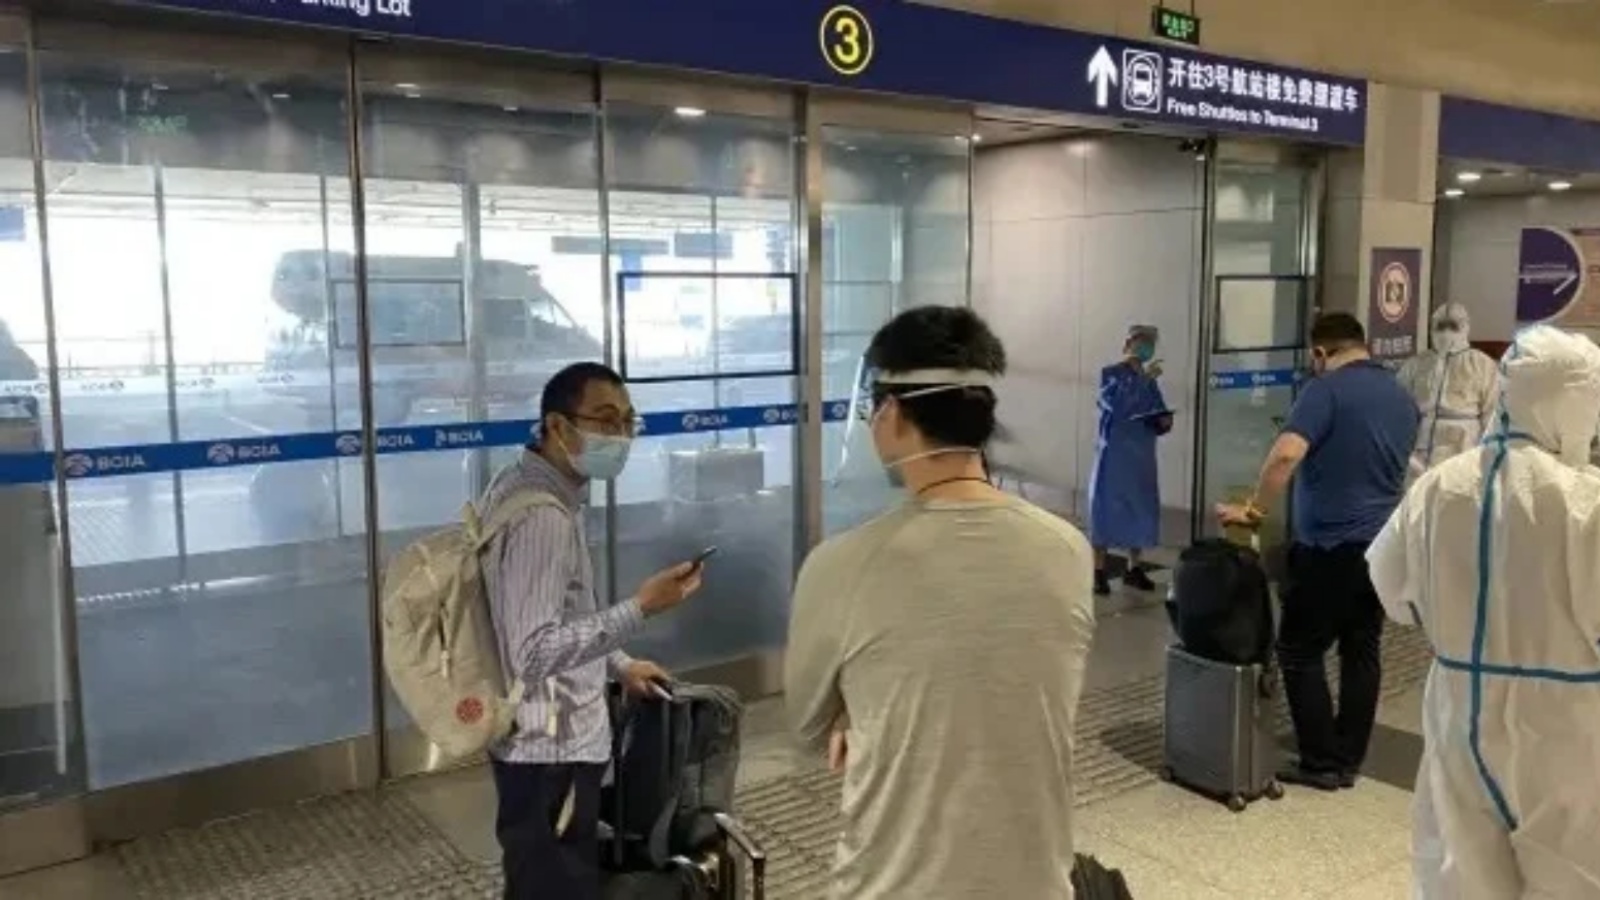 مسافرون ينتظرون نقلهم إلى الوجهات المعينة للحجر الصحي في مطار بكين الدولي في 18 يونيو 2022